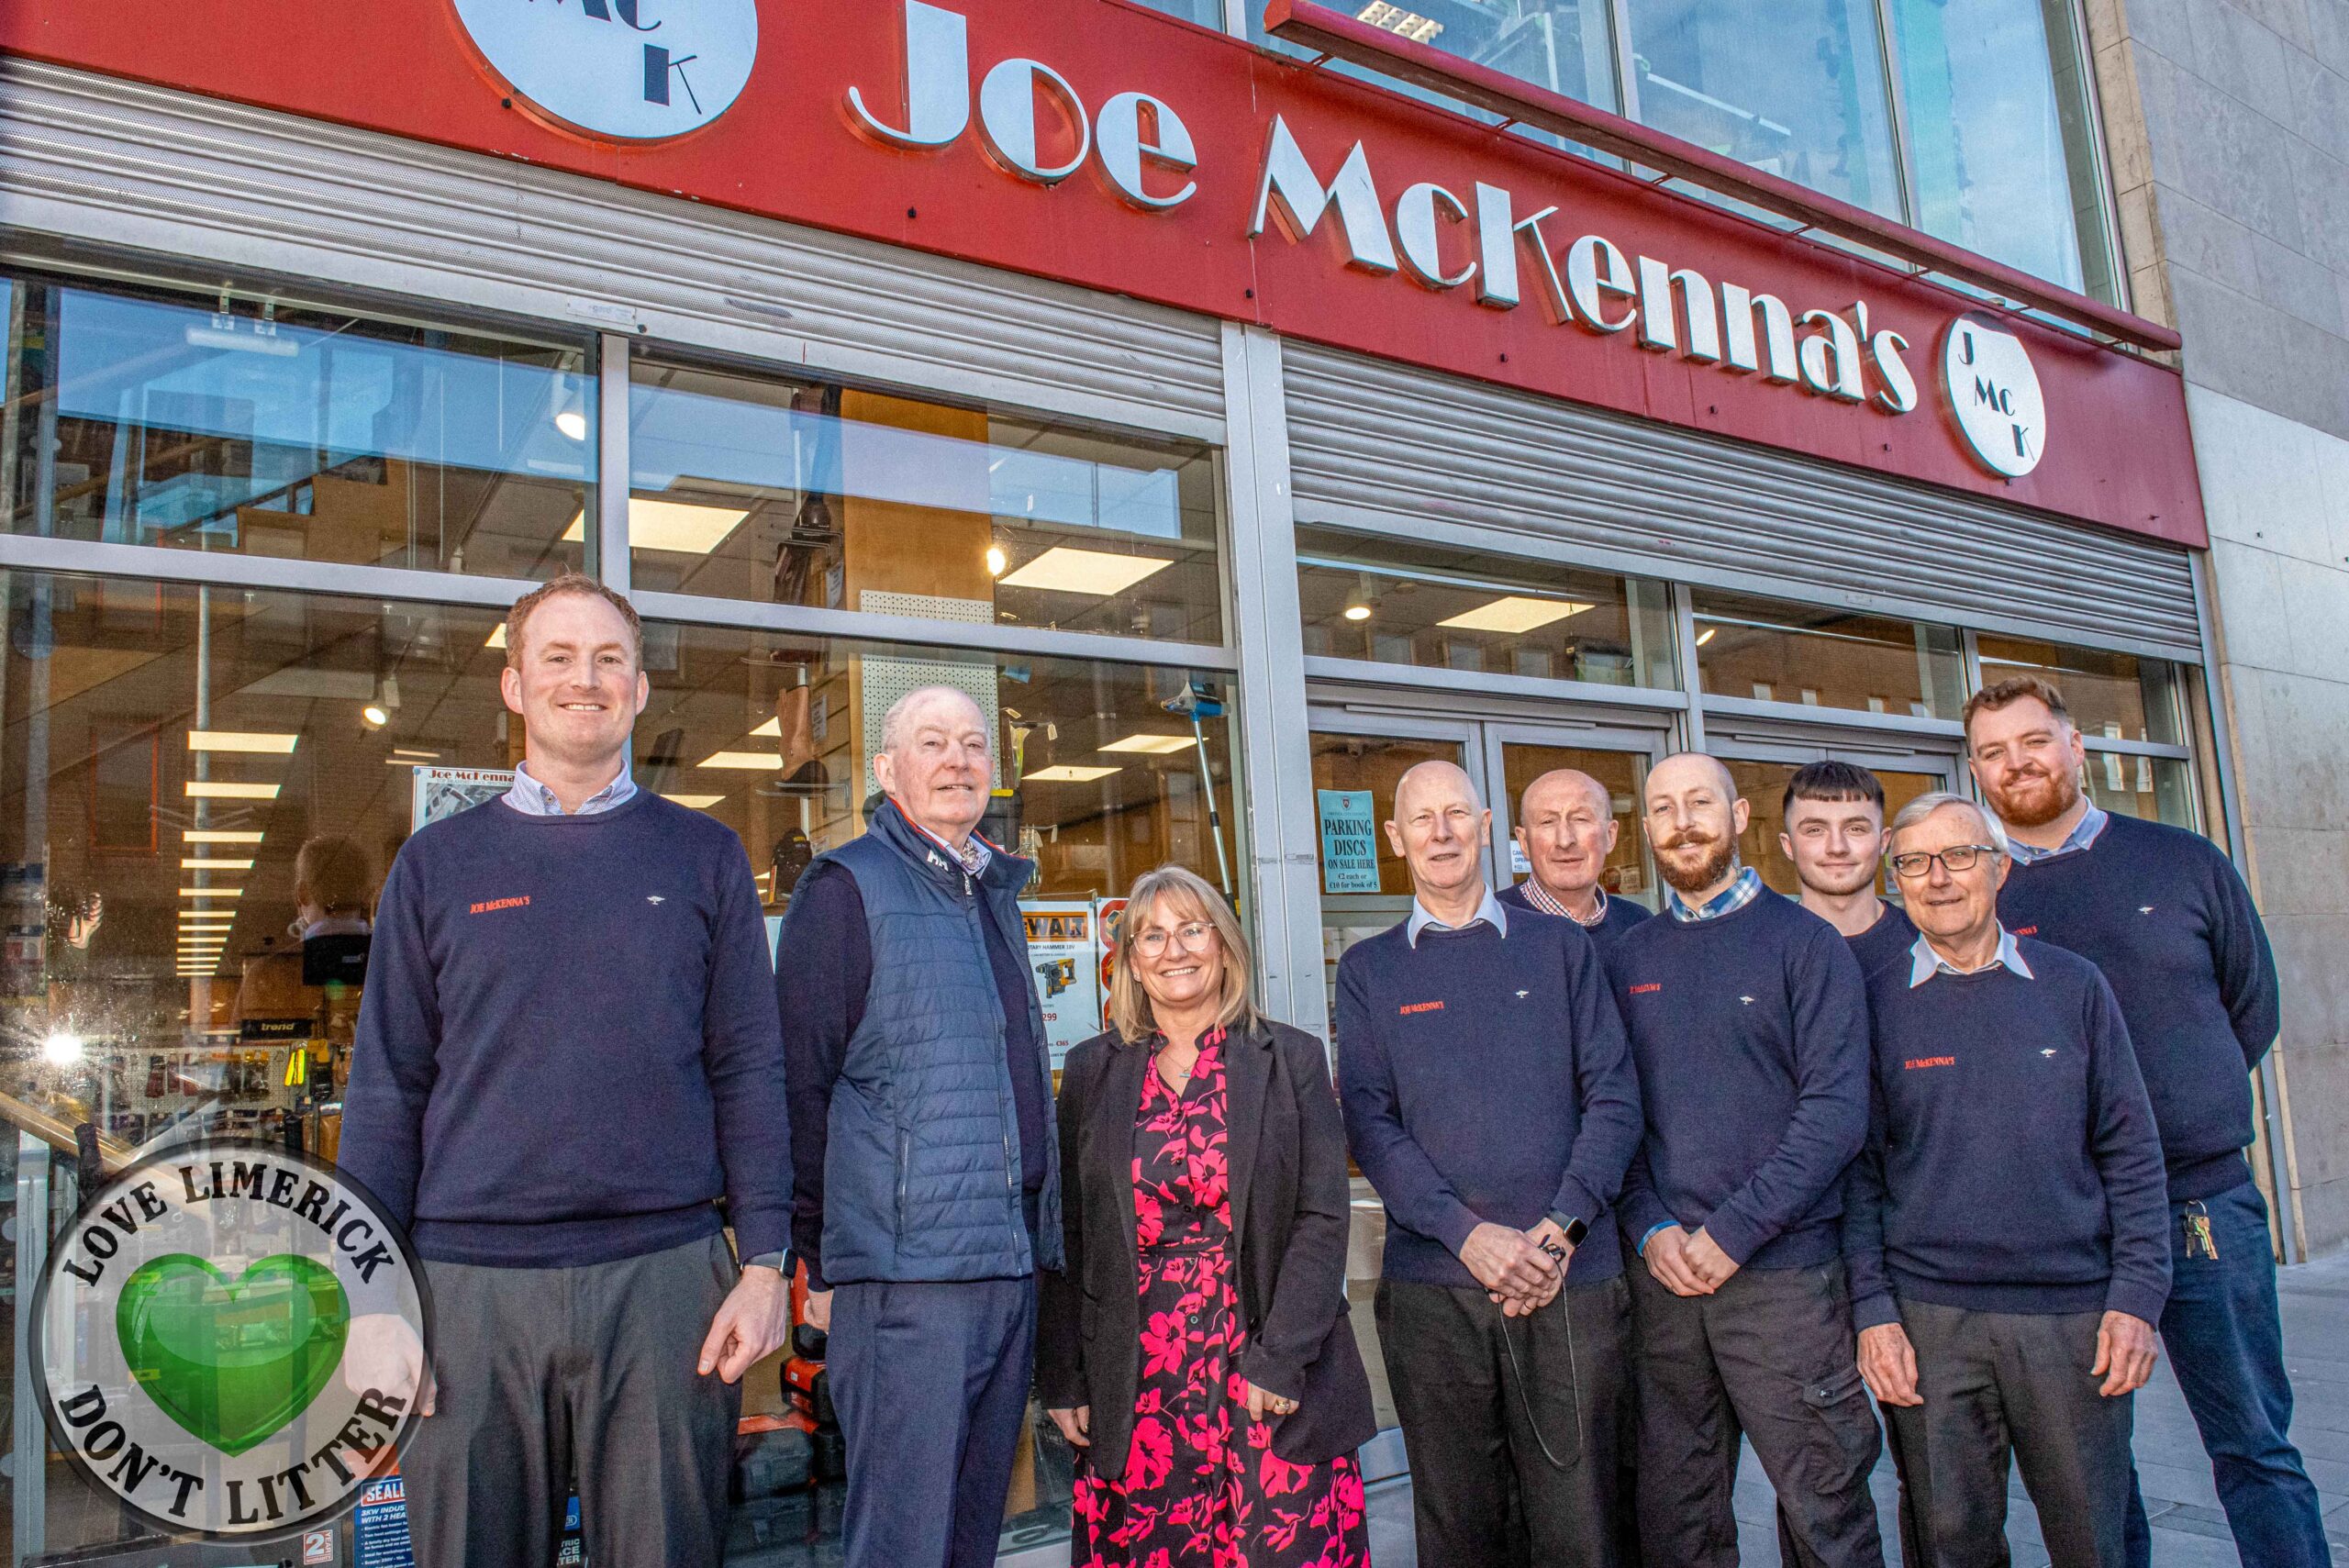 Joe McKenna's on Parnell Street, Limerick sells hardware and tools and was established in 1979. Picture: Olena Oleksienko/ilovelimerick